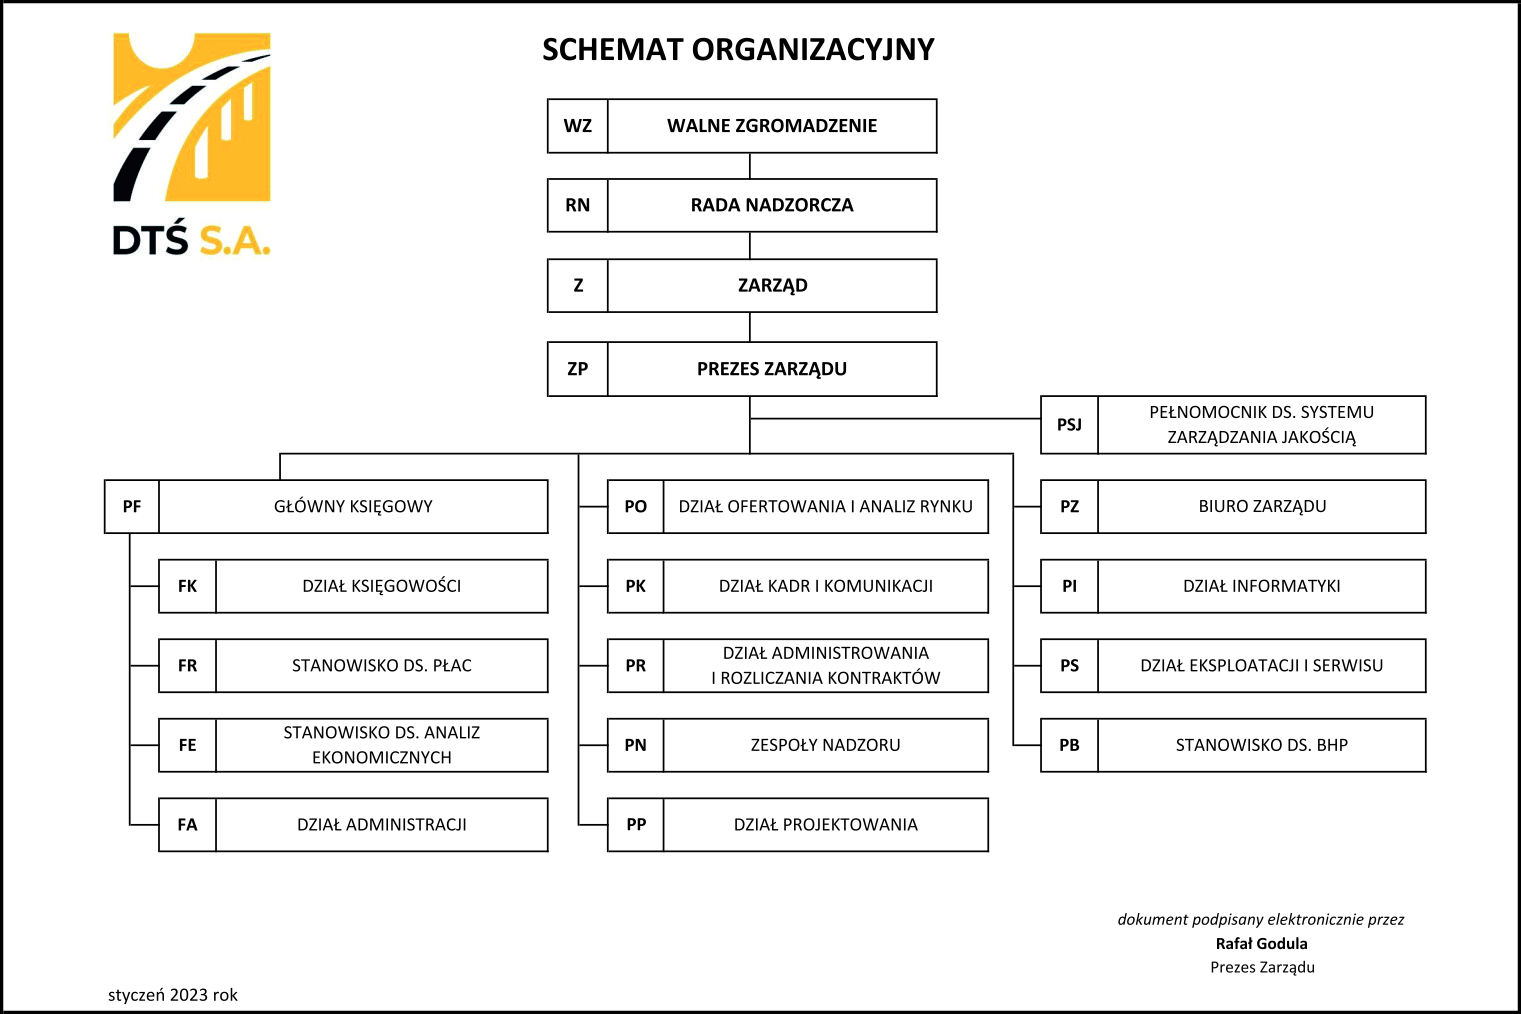 Struktura Organizacyjna DTŚ S.A. z dnia 08-03-2023 09:46:36